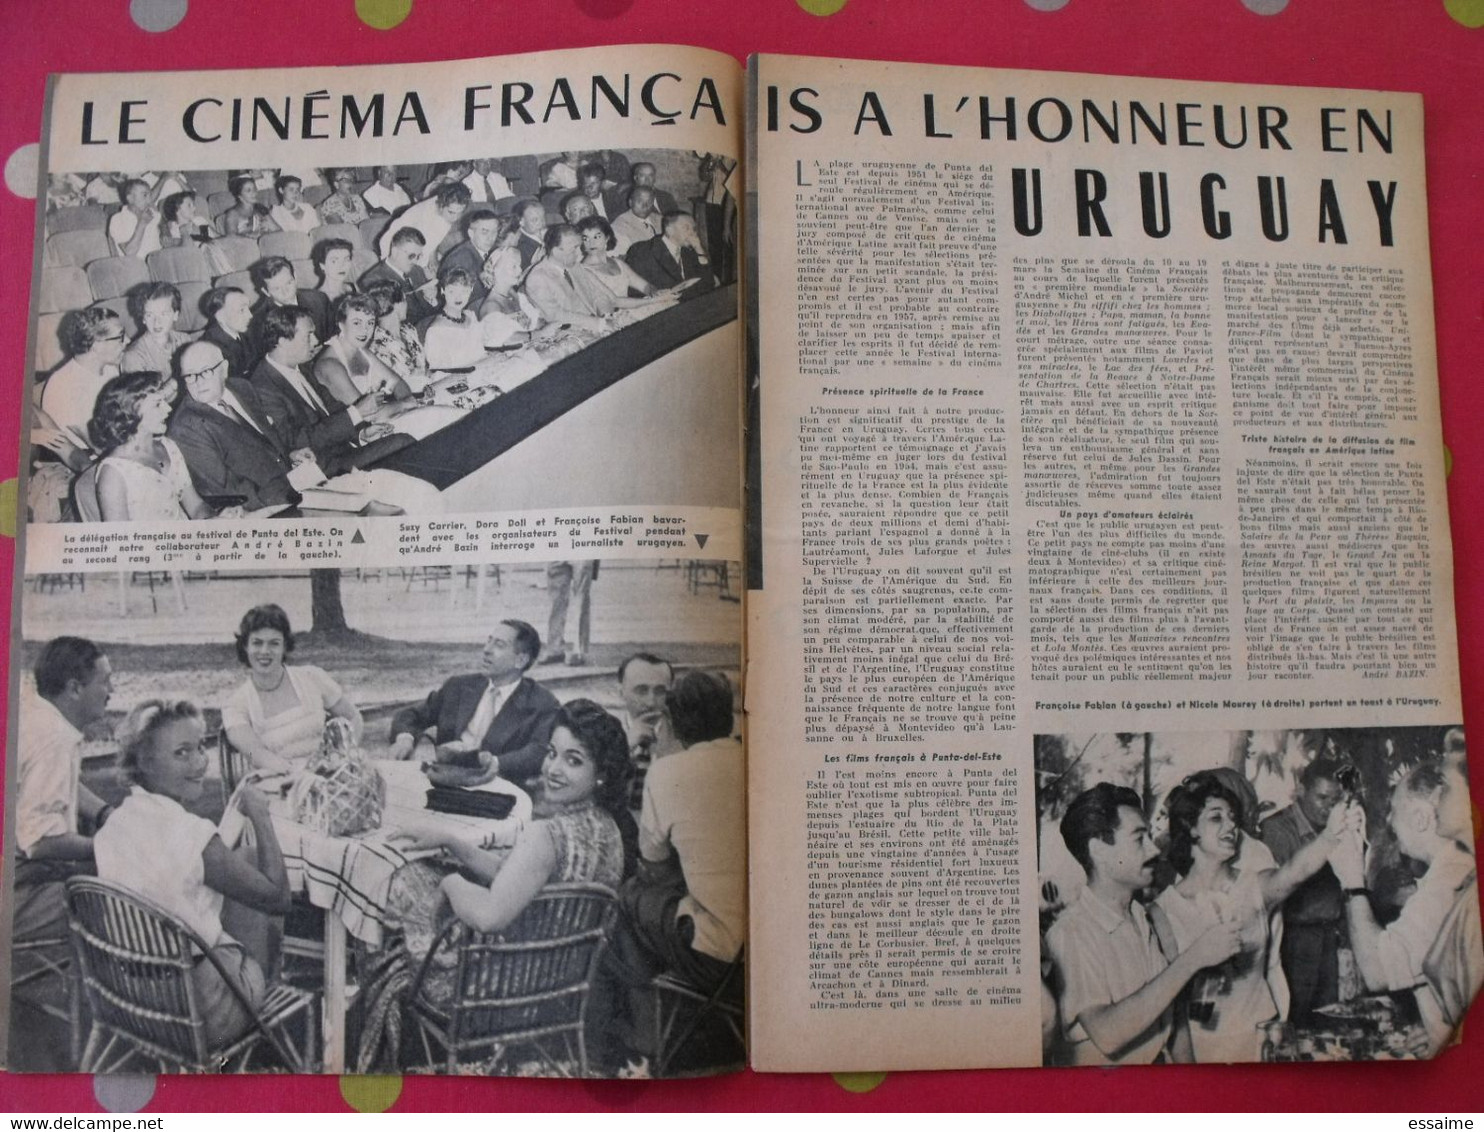 2 Revues Radio Cinéma Télévision N° 325,327 De 1956. Anna Magnani, Anne Vernon, Sabbagh De Caunes Chevalier - Cinema